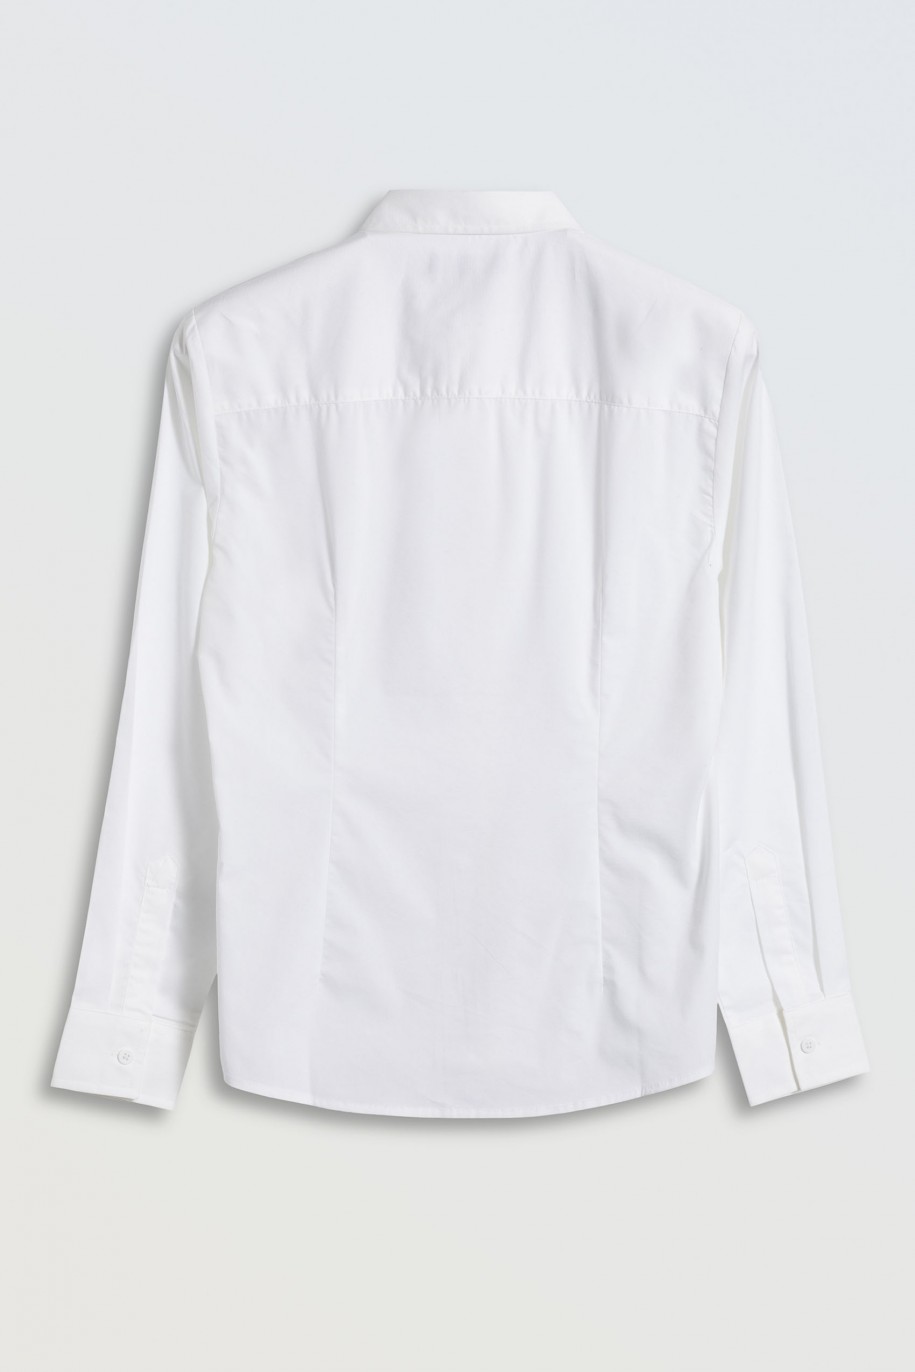 Biała koszula z długim rękawem zapinana na guziki - 45856